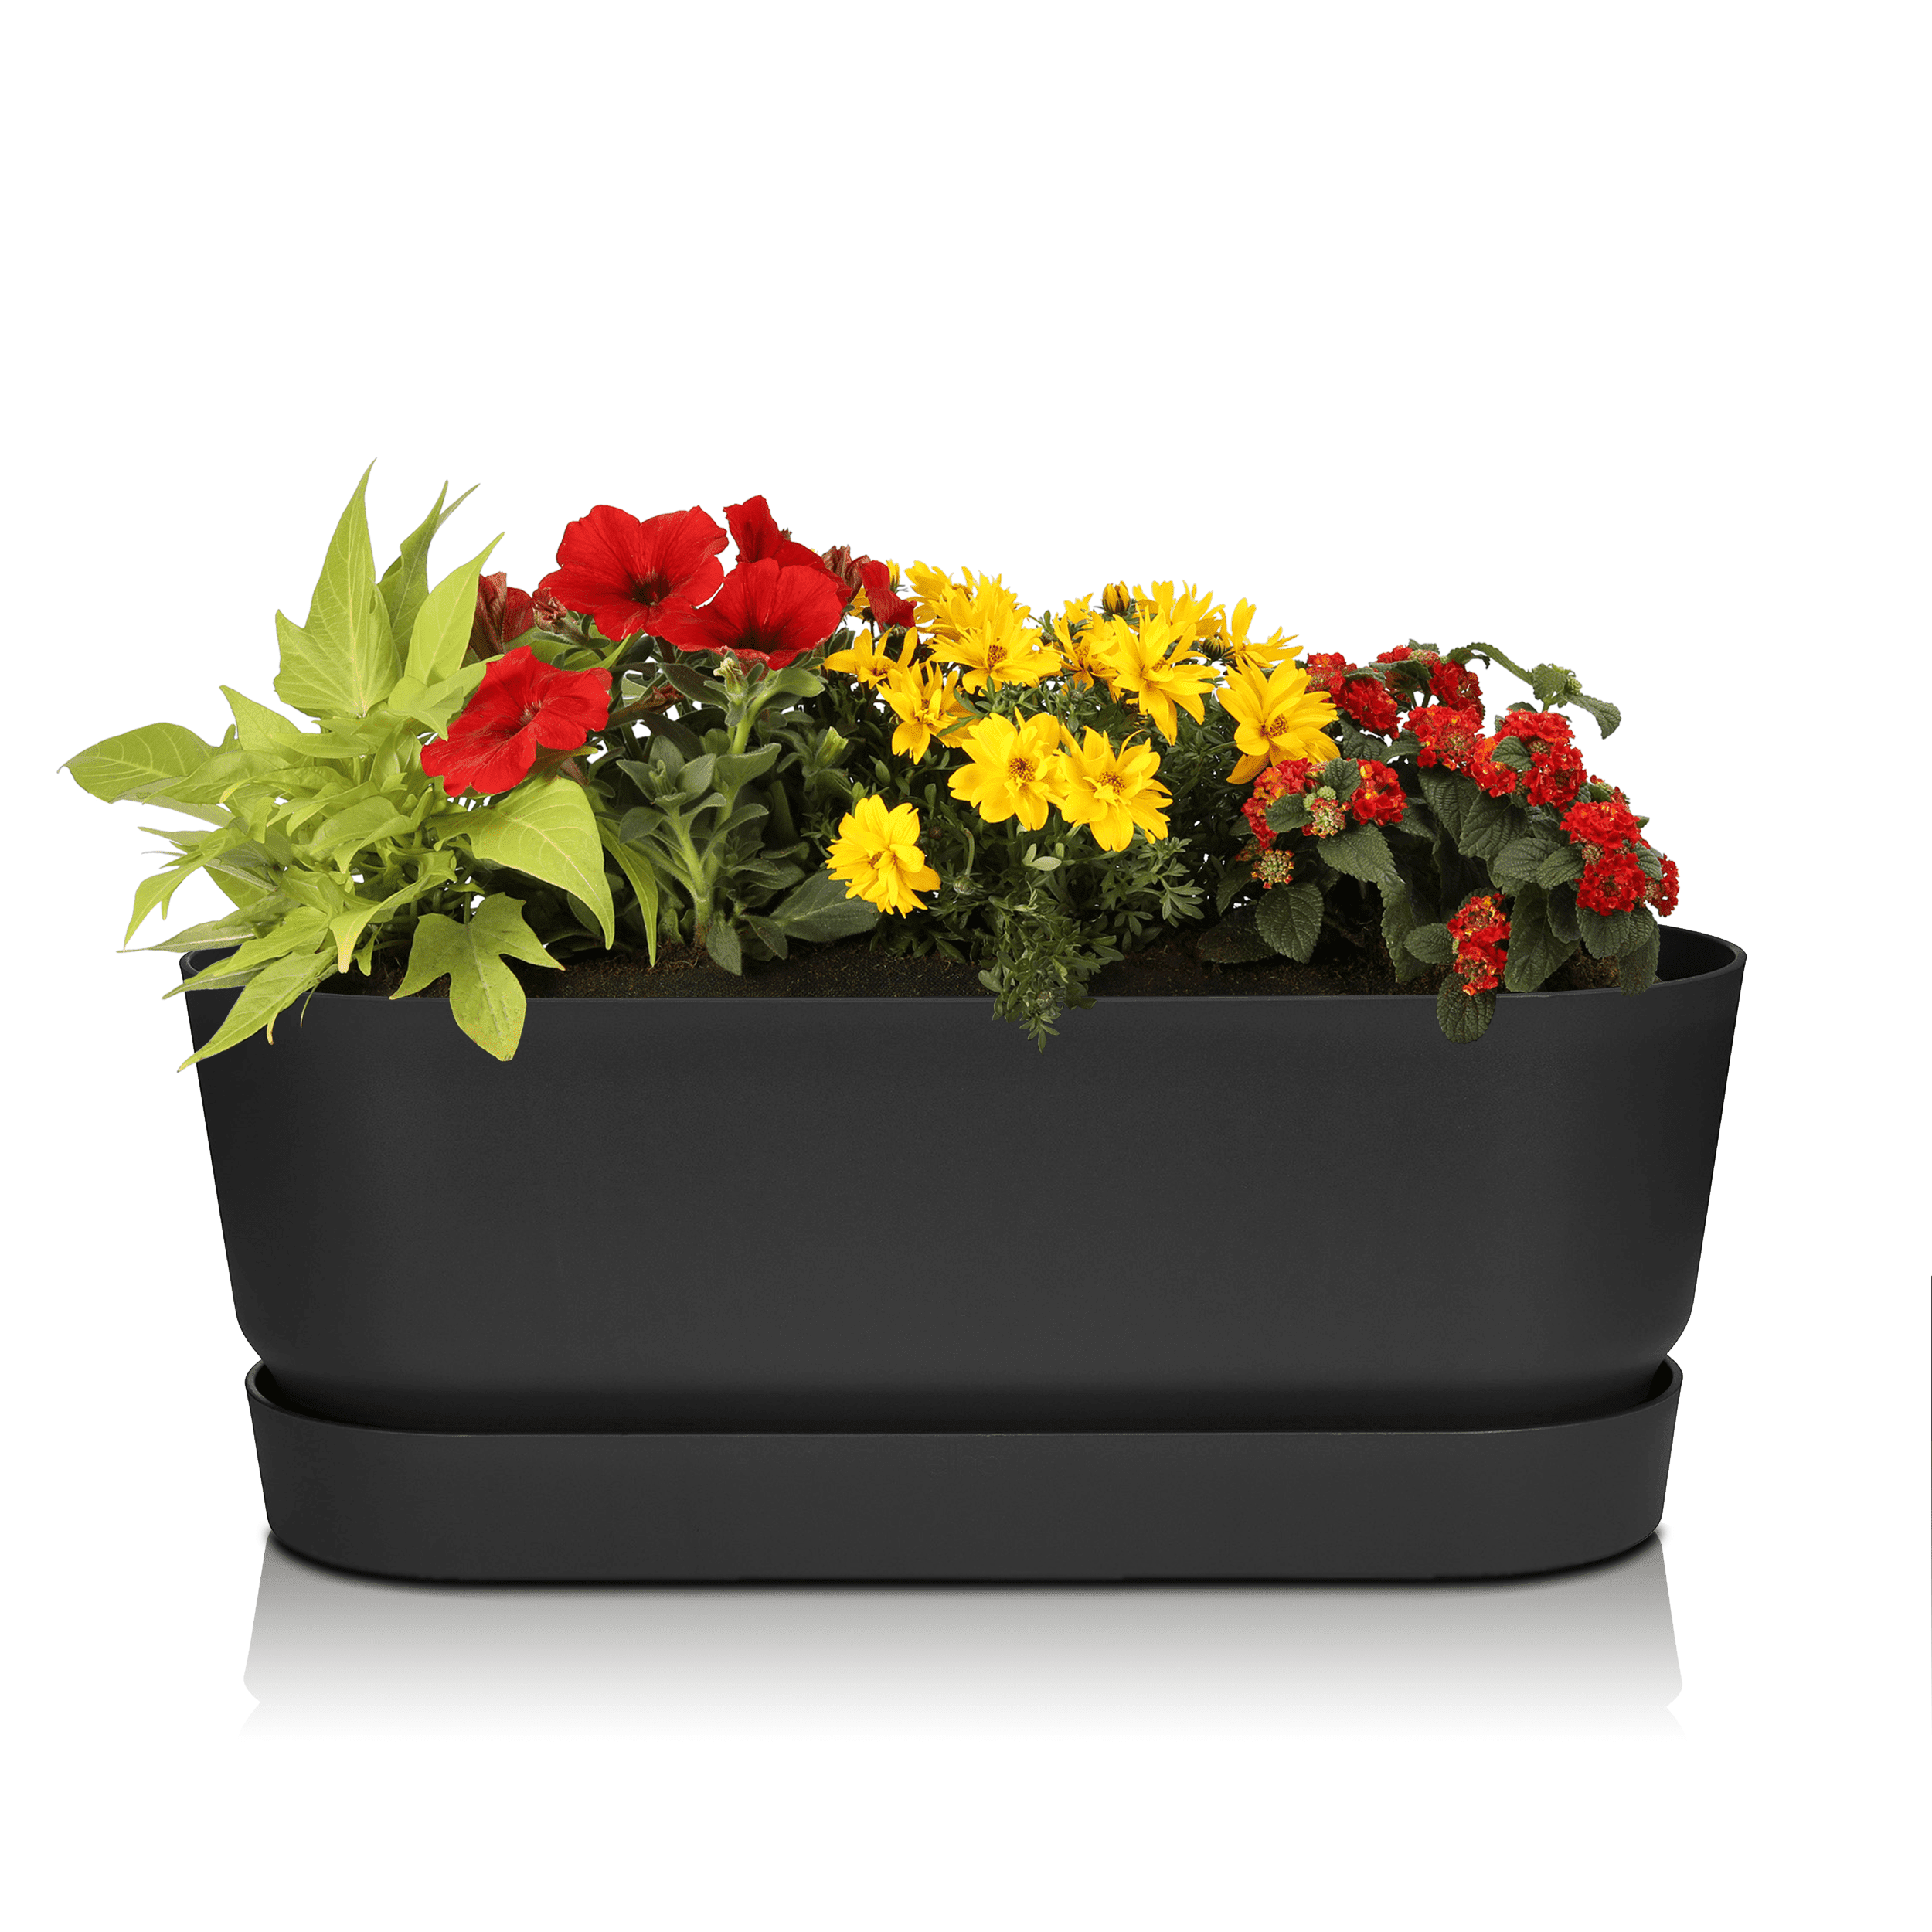 Sommerblumen Starter-Set Greenville schwarz 50 cm Überraschung Sonne